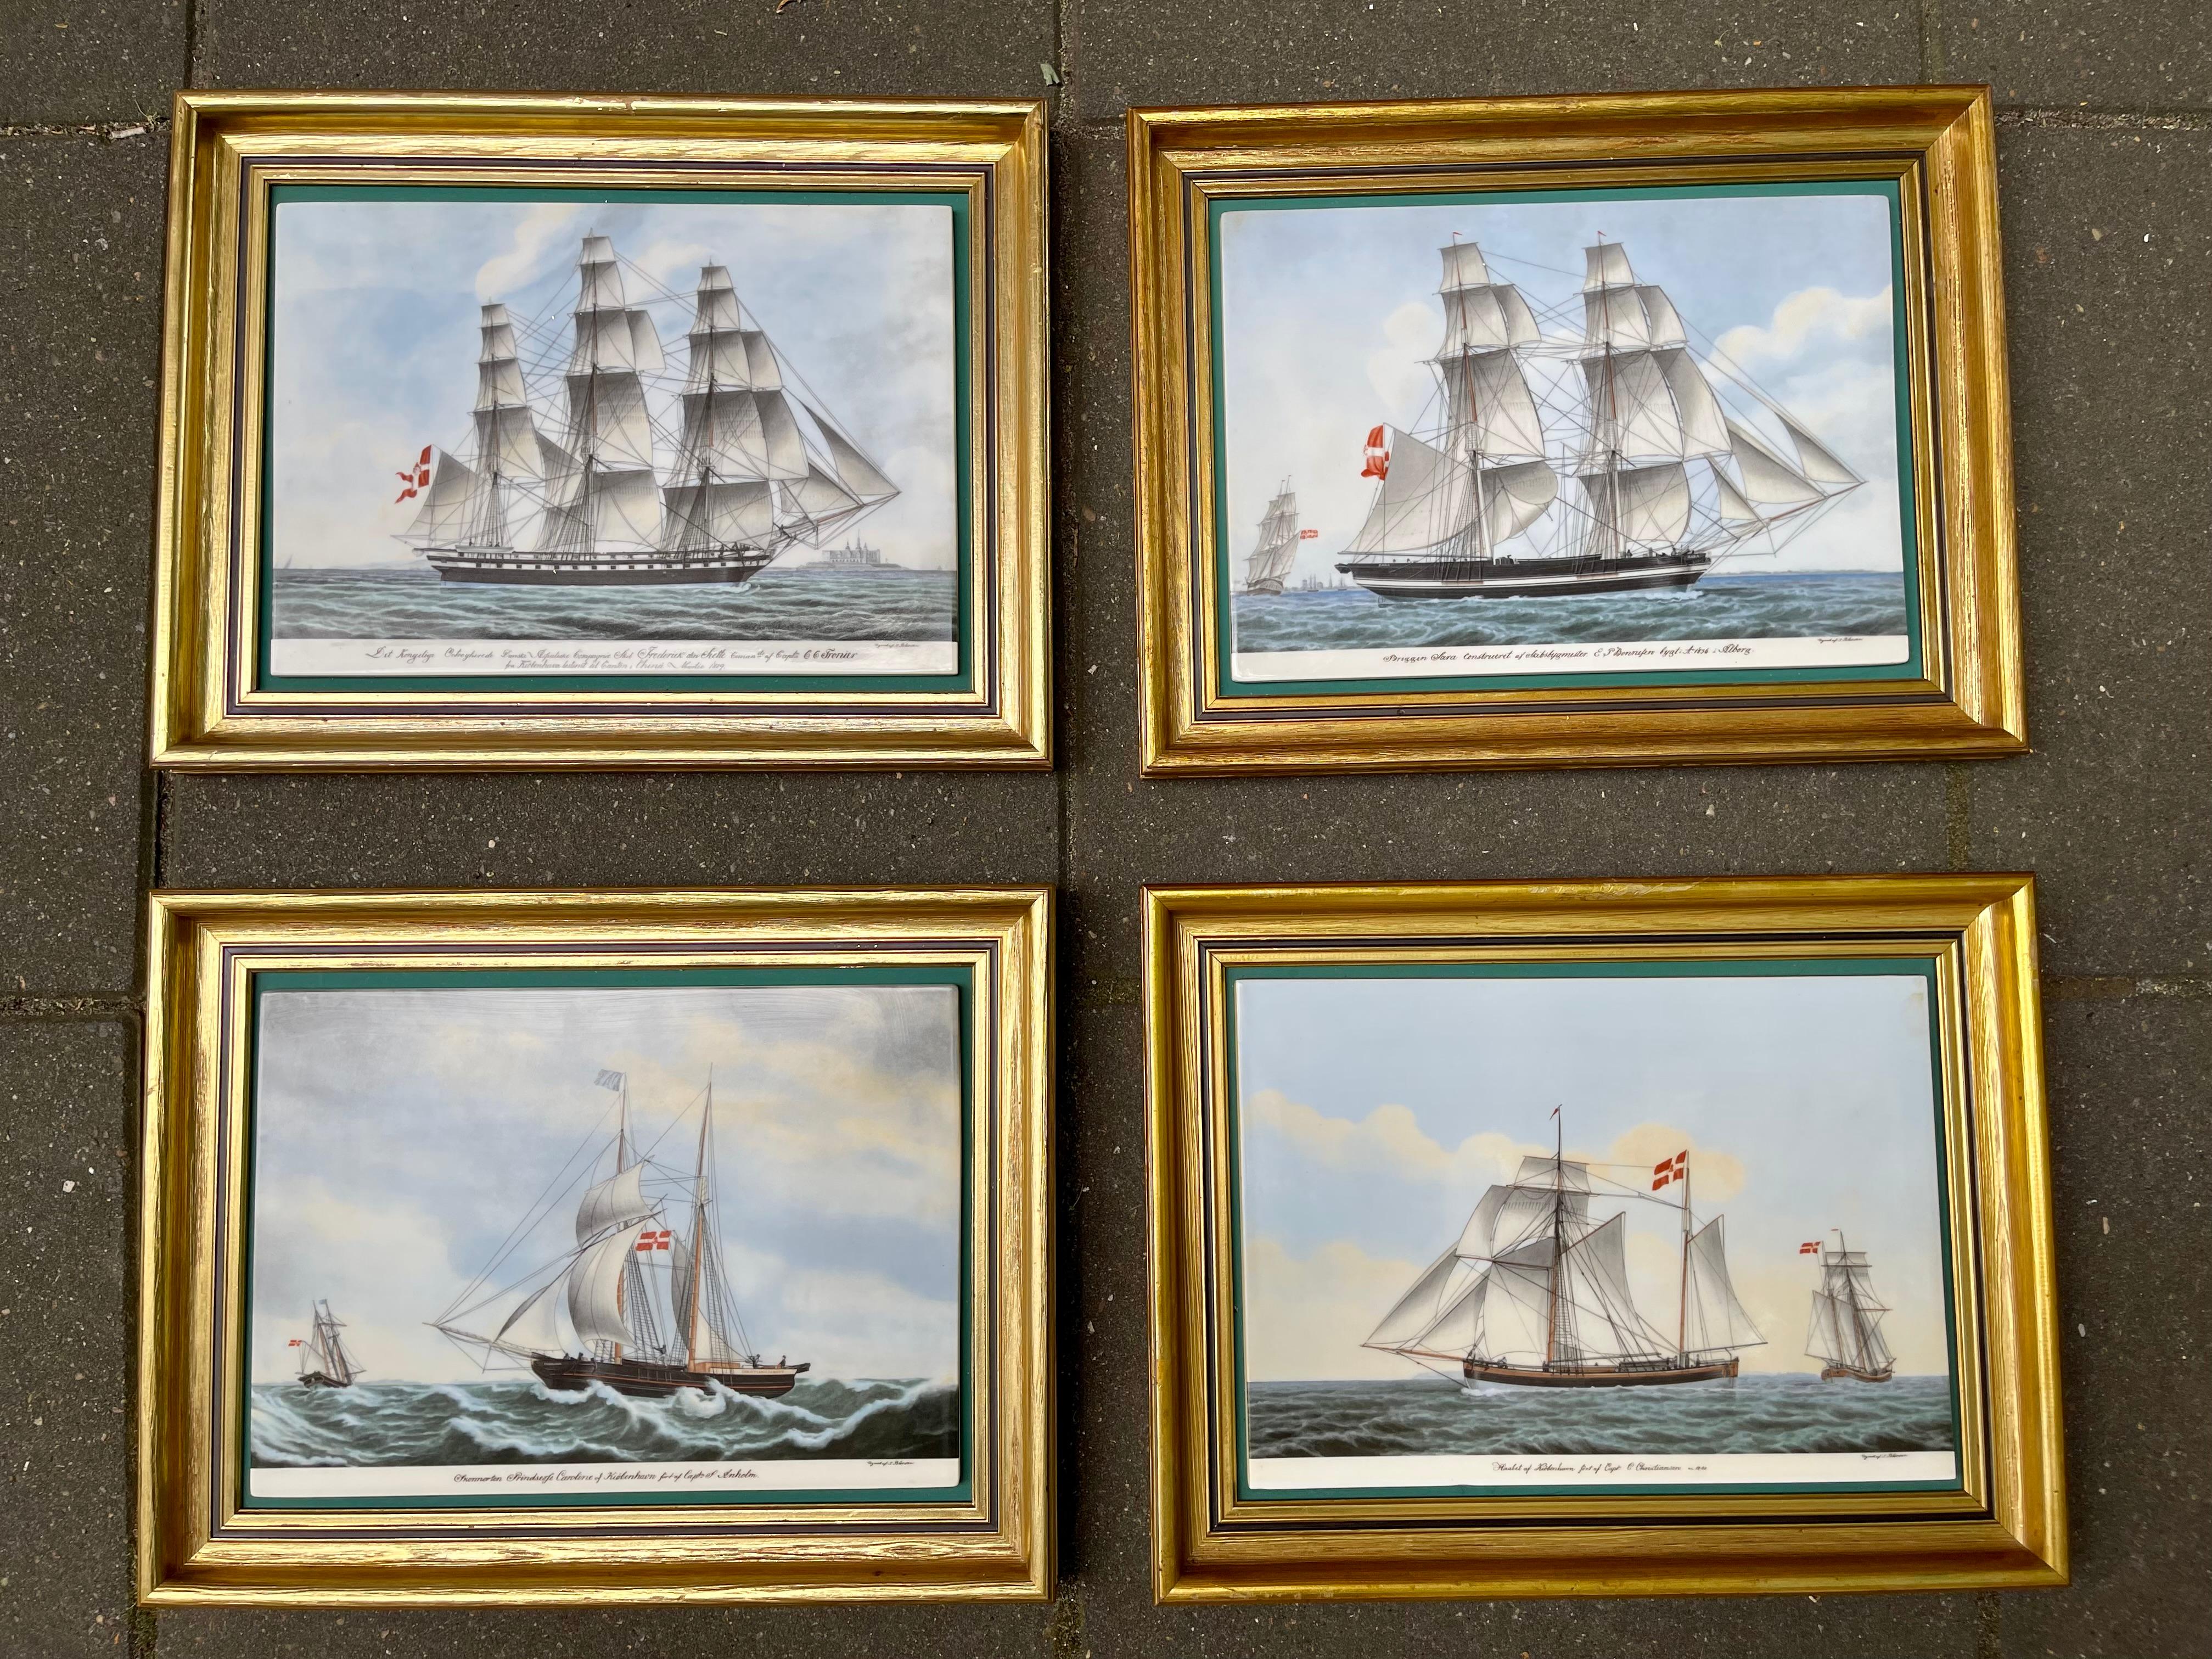 Le maître danois du portrait de navire Jakob Petersen (1774 - 1855), élève de C.I.C., a réalisé ces images sur commande au cours du 19e siècle. En association avec le Commerce and Shipping Museum, Bing & Grondahl a réalisé ces images en porcelaine